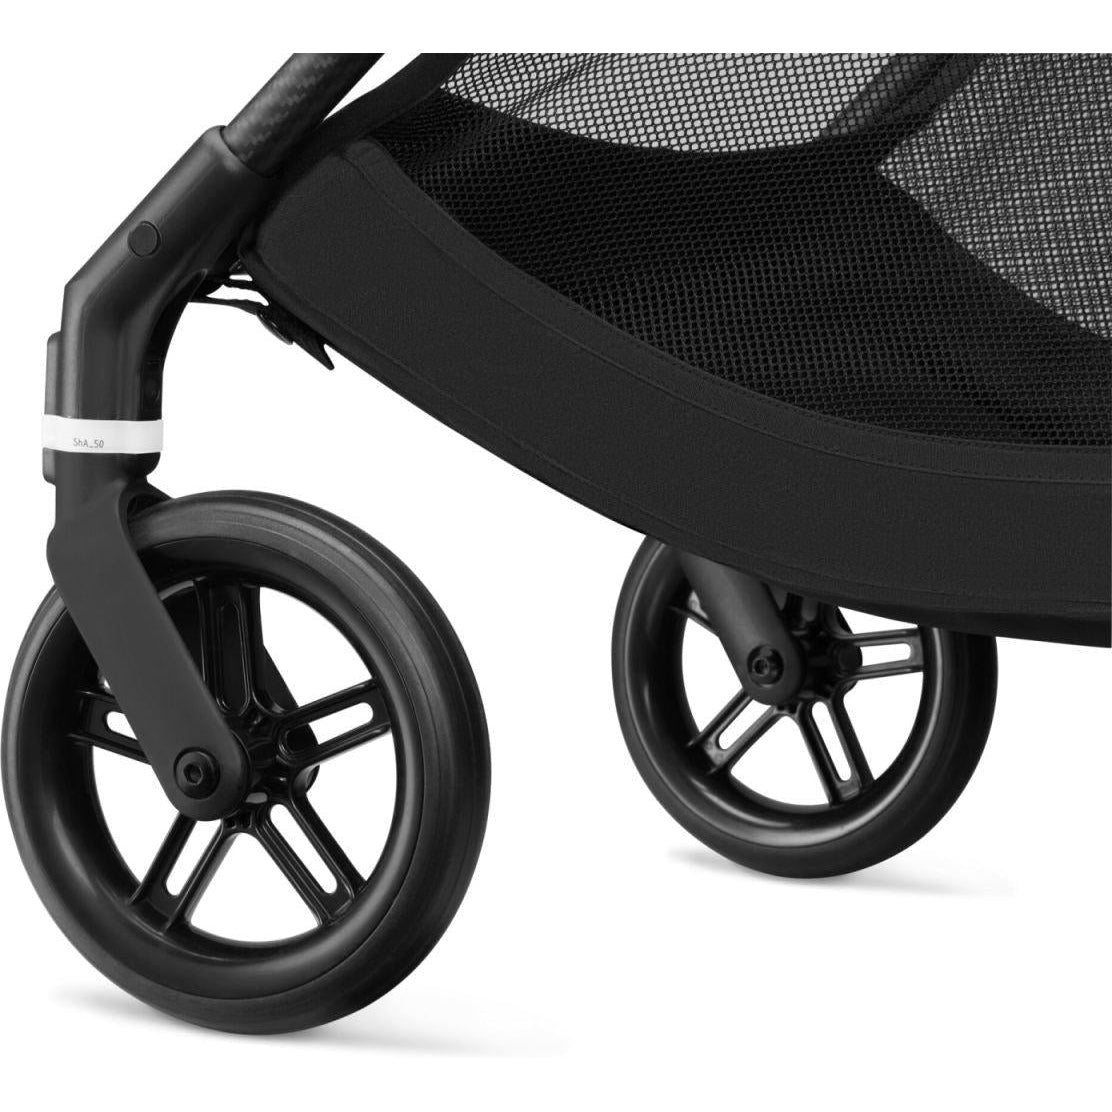 Cybex Melio Carbon 3 Stroller - Twinkle Twinkle Little One